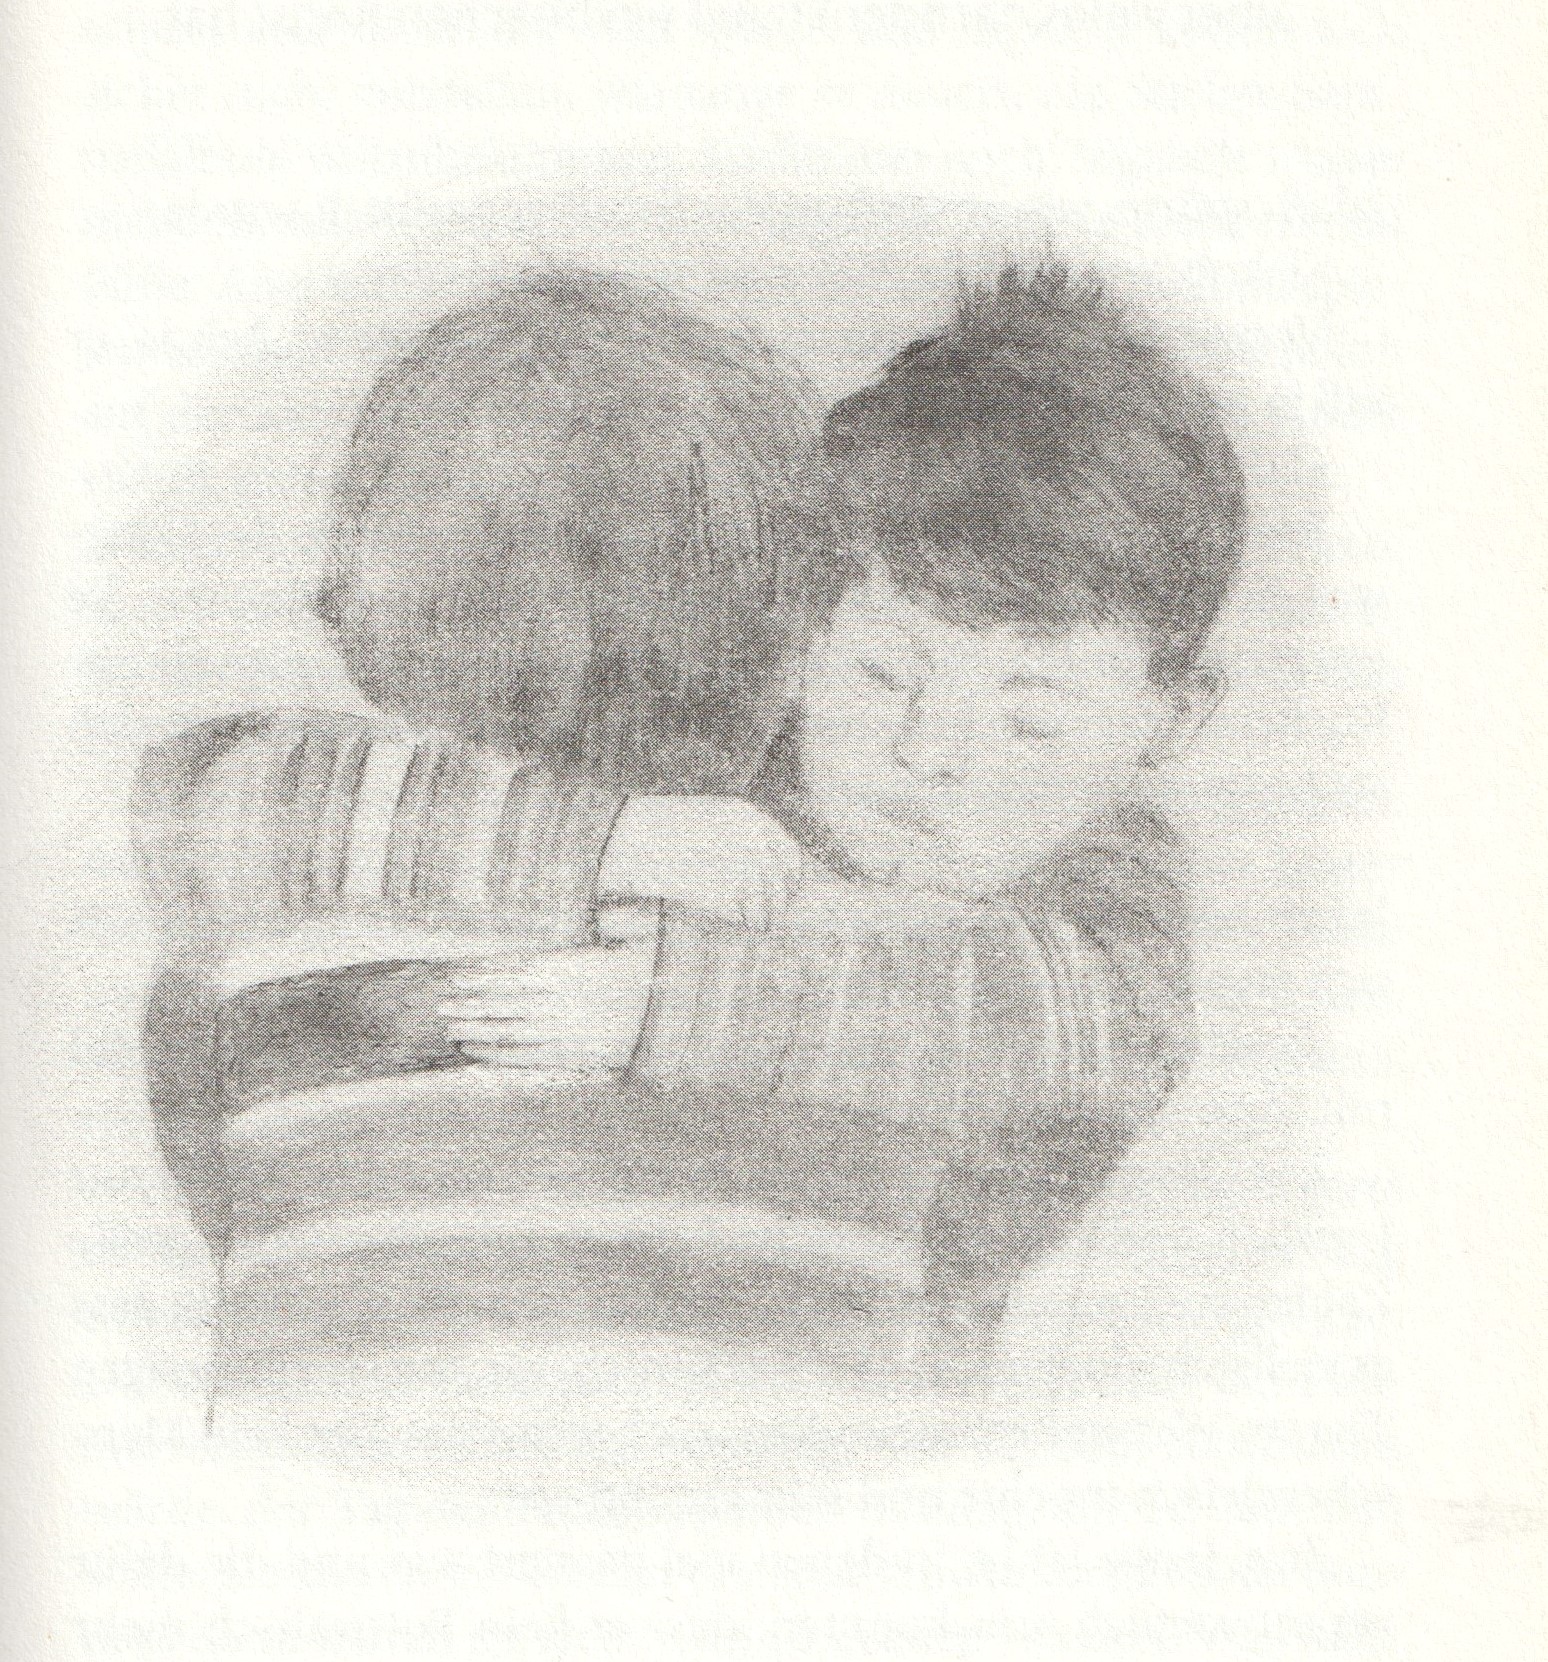 Zwei Buben - Jakob und Noah - umarmen sich (Rosemarie Poiarkov, "Jakob und Ingxenje", Kinderbuch, illustriert von Michaela Weiss)